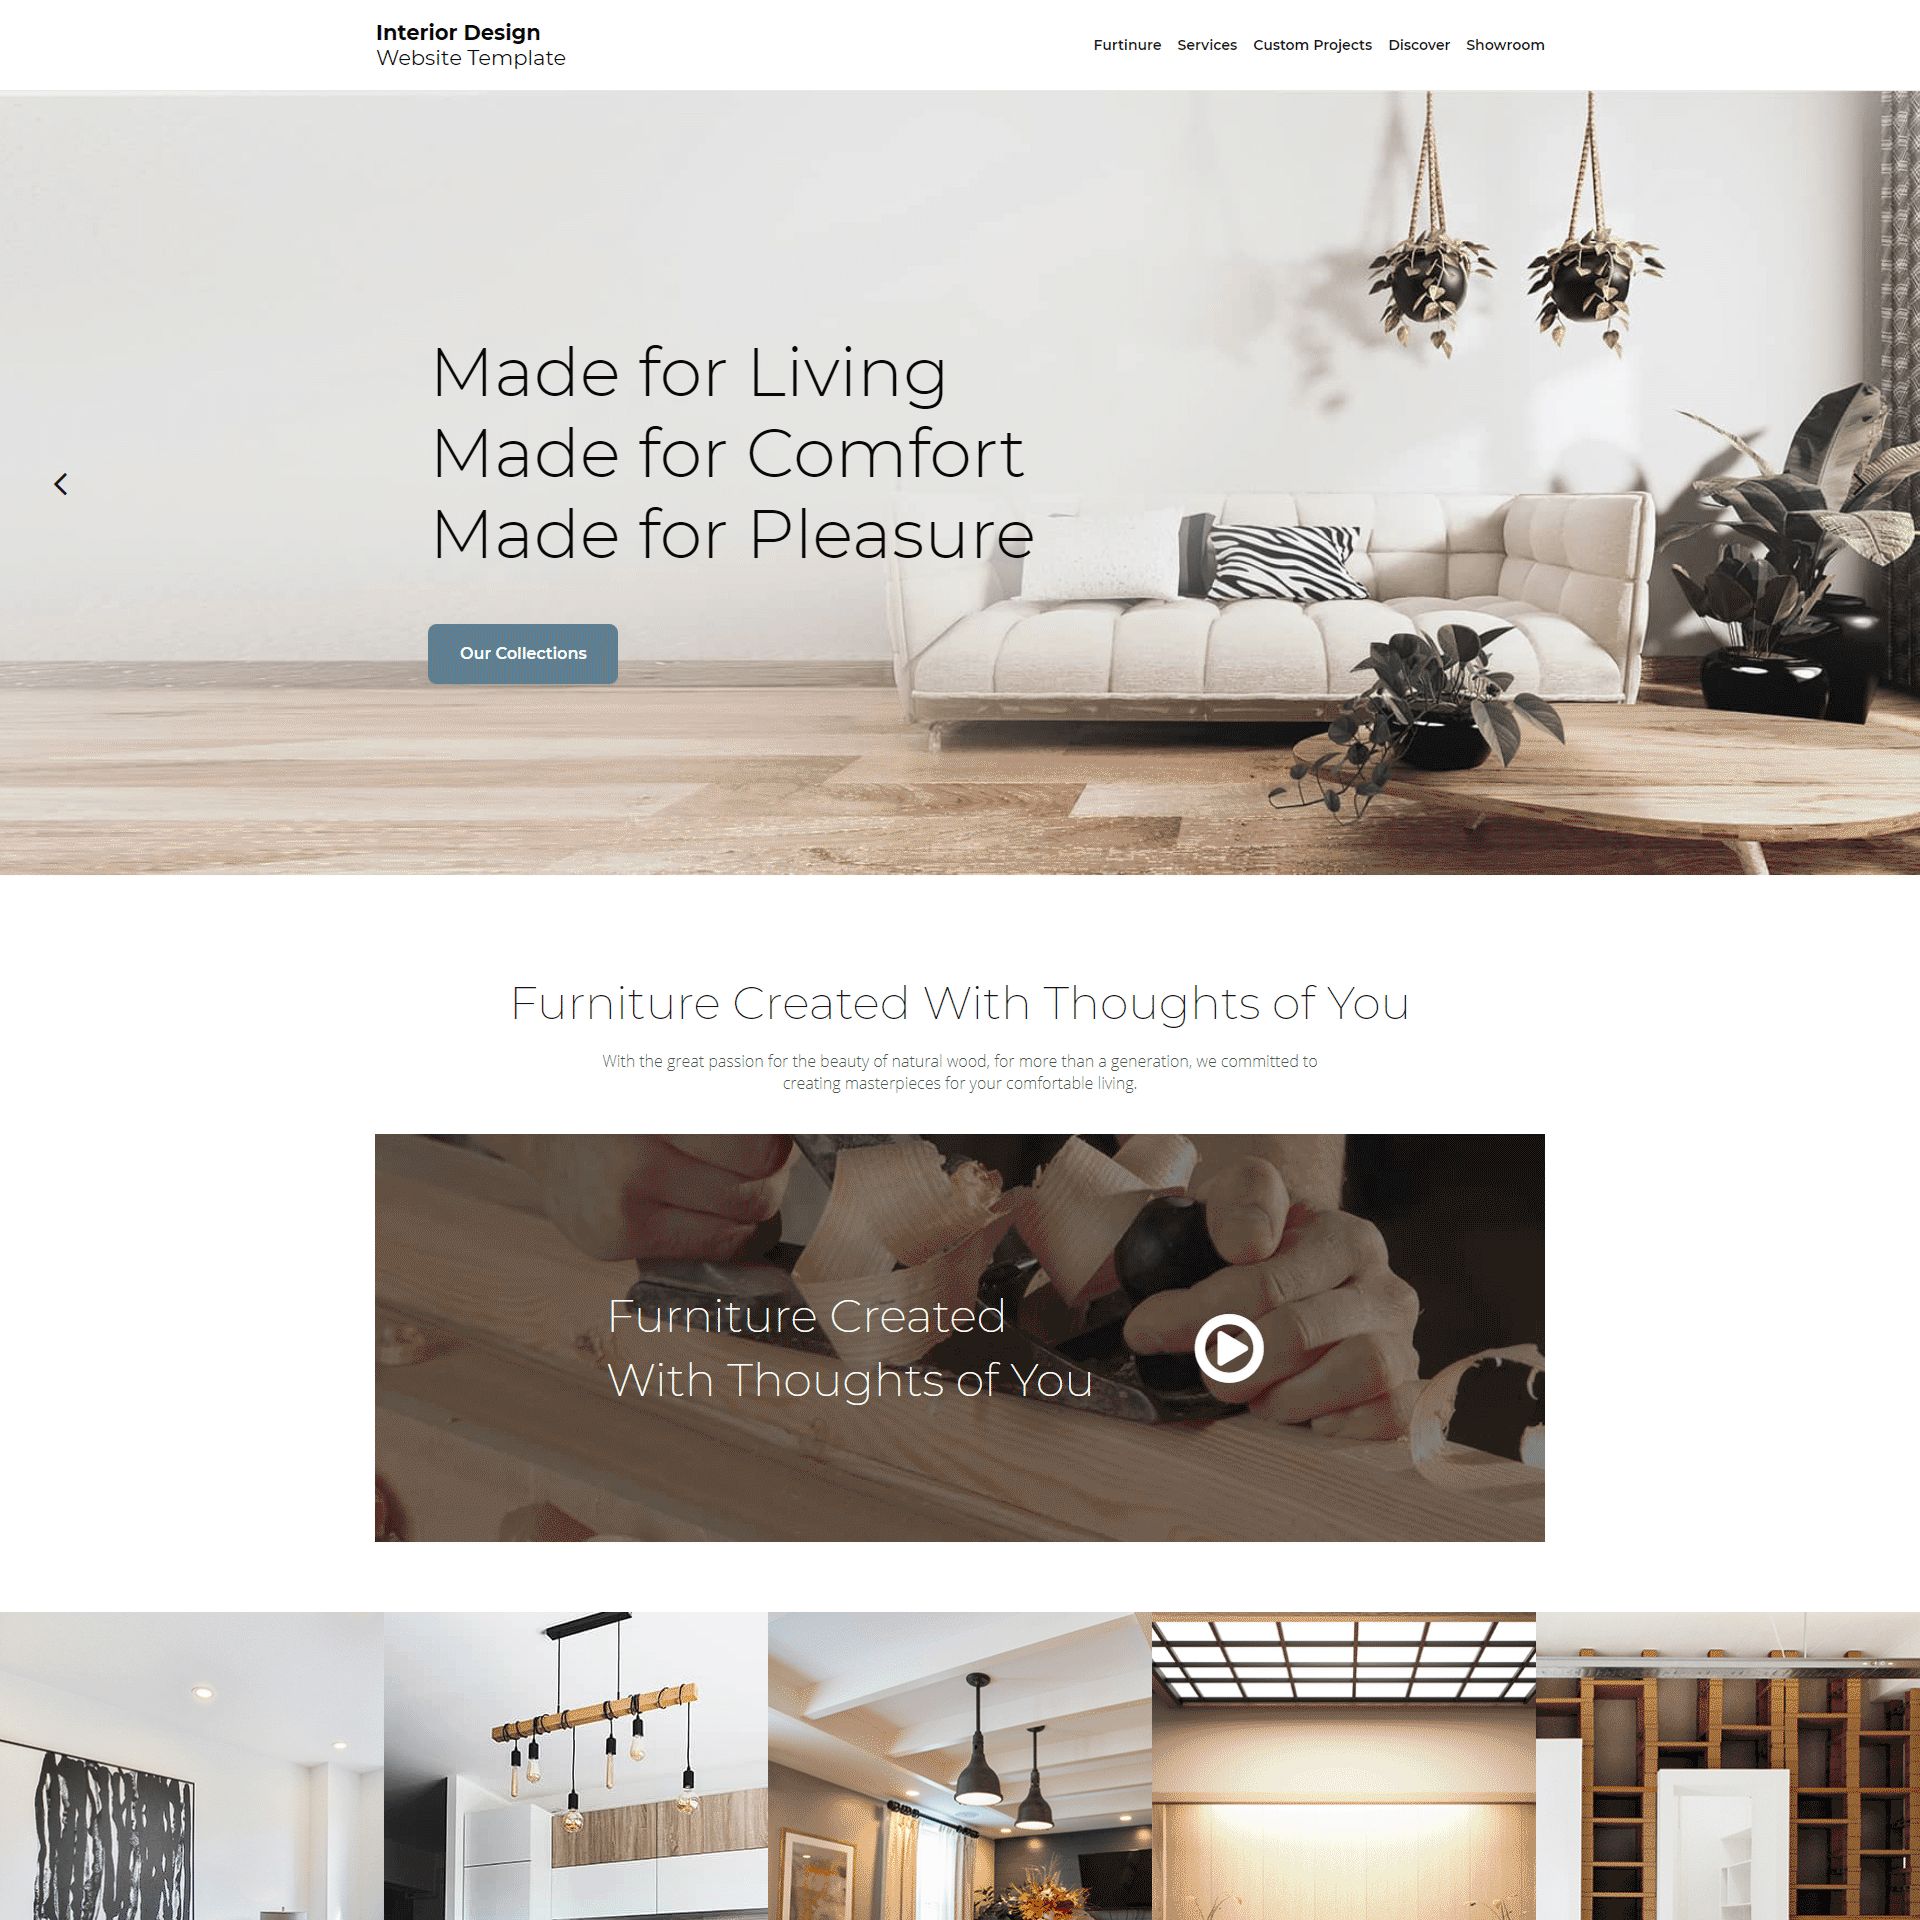 Interior Design Website Template - Go Edit